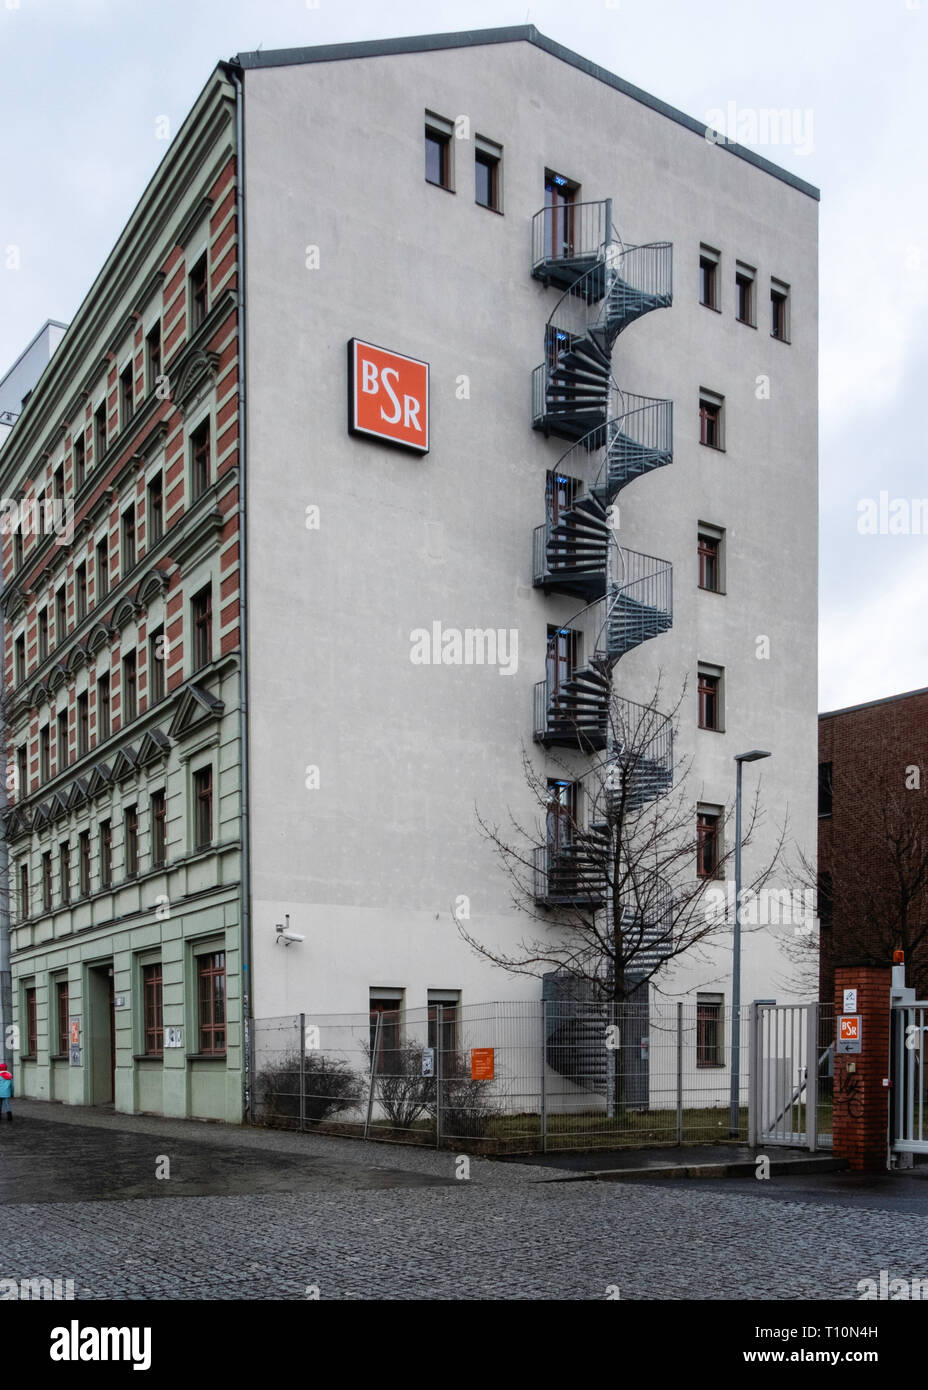 Berlin-Friedrichshain die Berliner Stadtreinigung (BSR), City Reinigung Firma Gebäude. Logo & Wendeltreppe die BSR für Müll verantwortlich ist Stockfoto